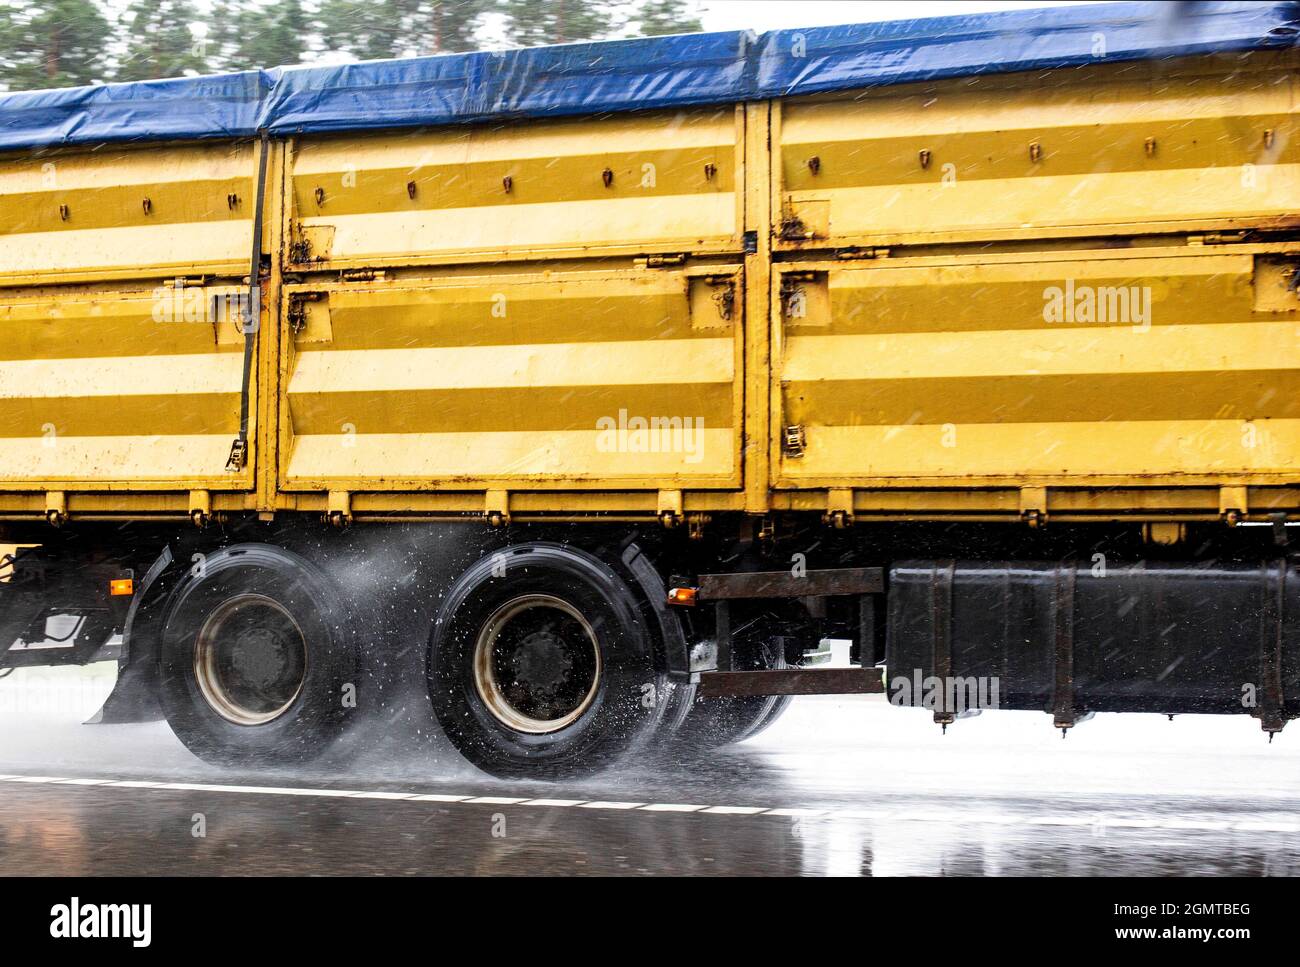 Un camion à grains jaunes avec une surcharge pour le soja roule sur de l'asphalte humide. Concept de transport de marchandises par temps pluvieux, route glissante Banque D'Images